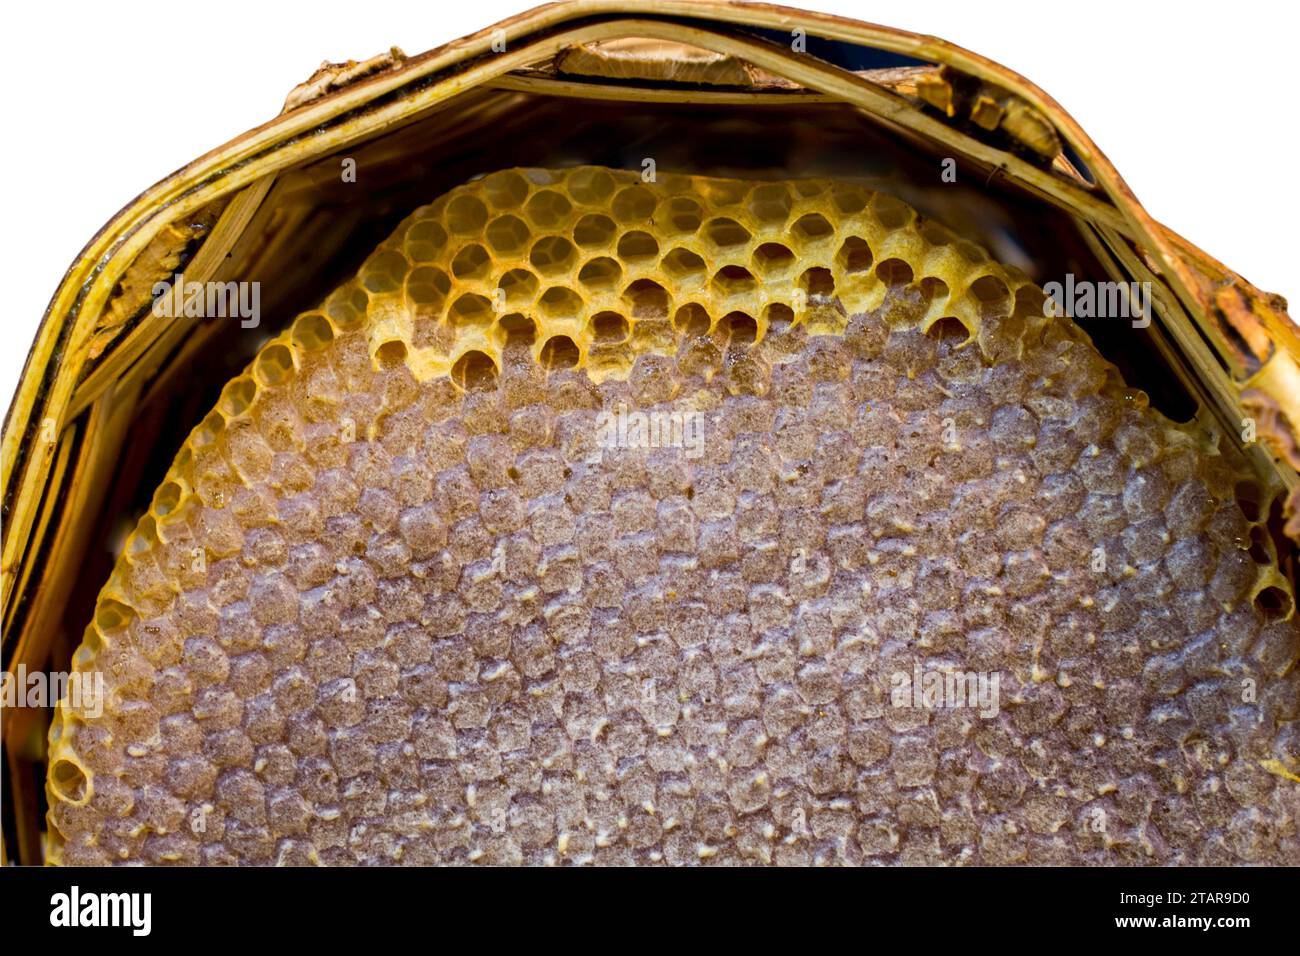 Nid d'abeille de ruche remplie de miel, thème de produit biologique Banque D'Images